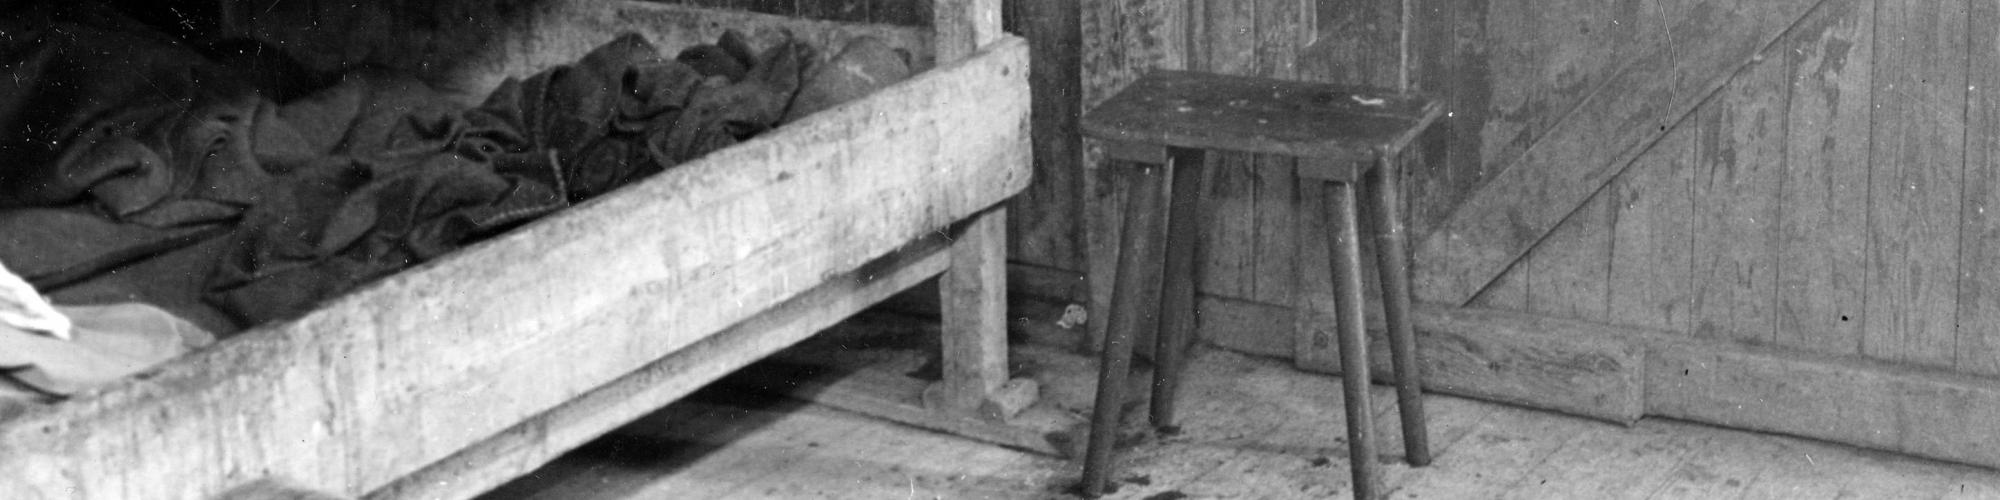 Photo prise par François Louis Ganshof au camp de Buchenwald. Tabouret et emplacement où est mort le ministre Paul-Emile Janson, 28/4/1945, photo n° 274604, copyrights CegeSoma/Archives de l'Etat.